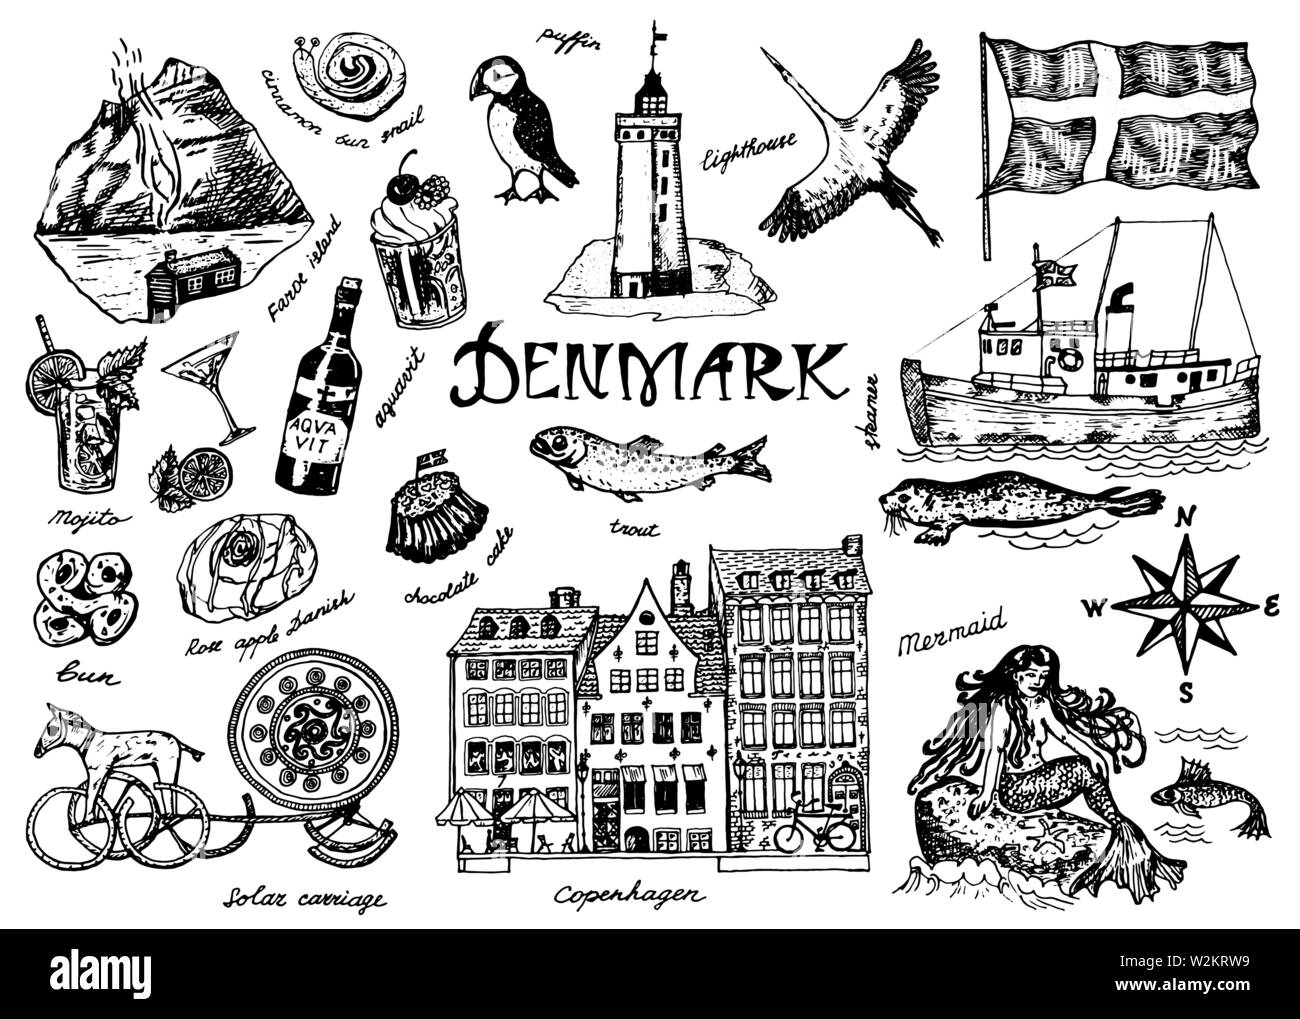 Símbolos de Dinamarca en el estilo de época. Sketch retro con señales tradicionales. La cultura escandinava, entretenimiento nacional en el país europeo. Casas Ilustración del Vector